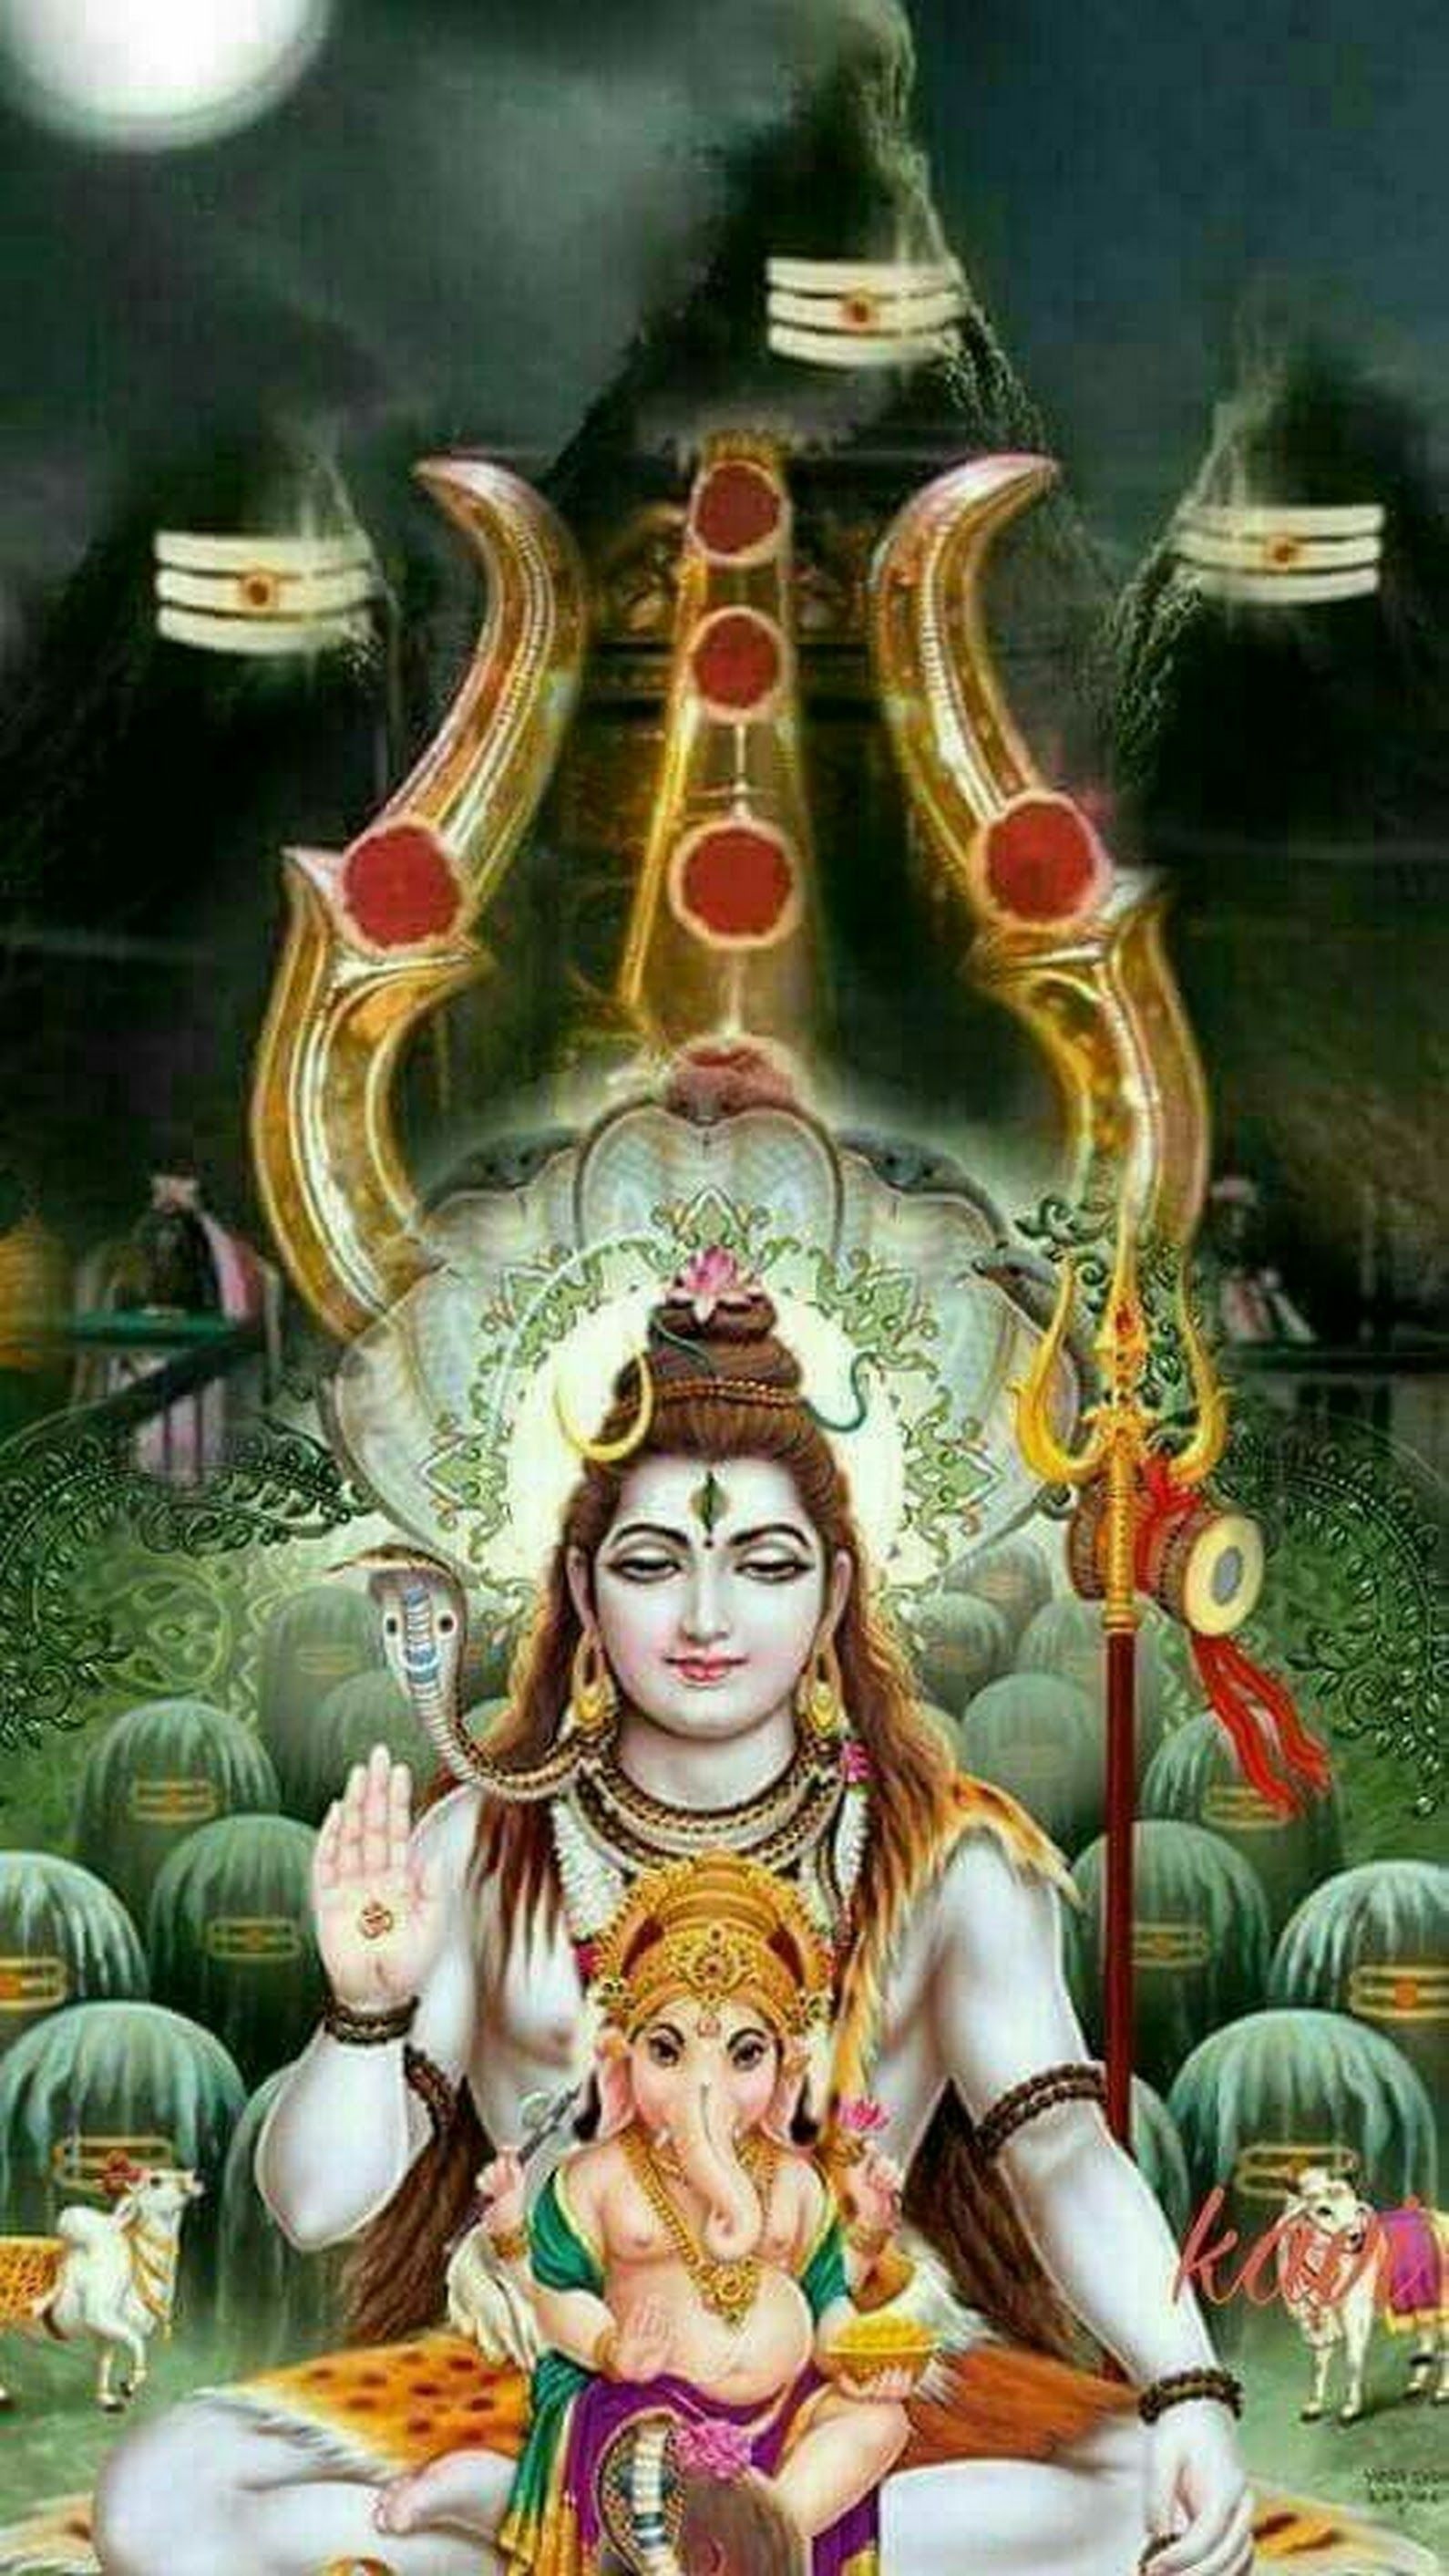 Sivan Images - Hindu God